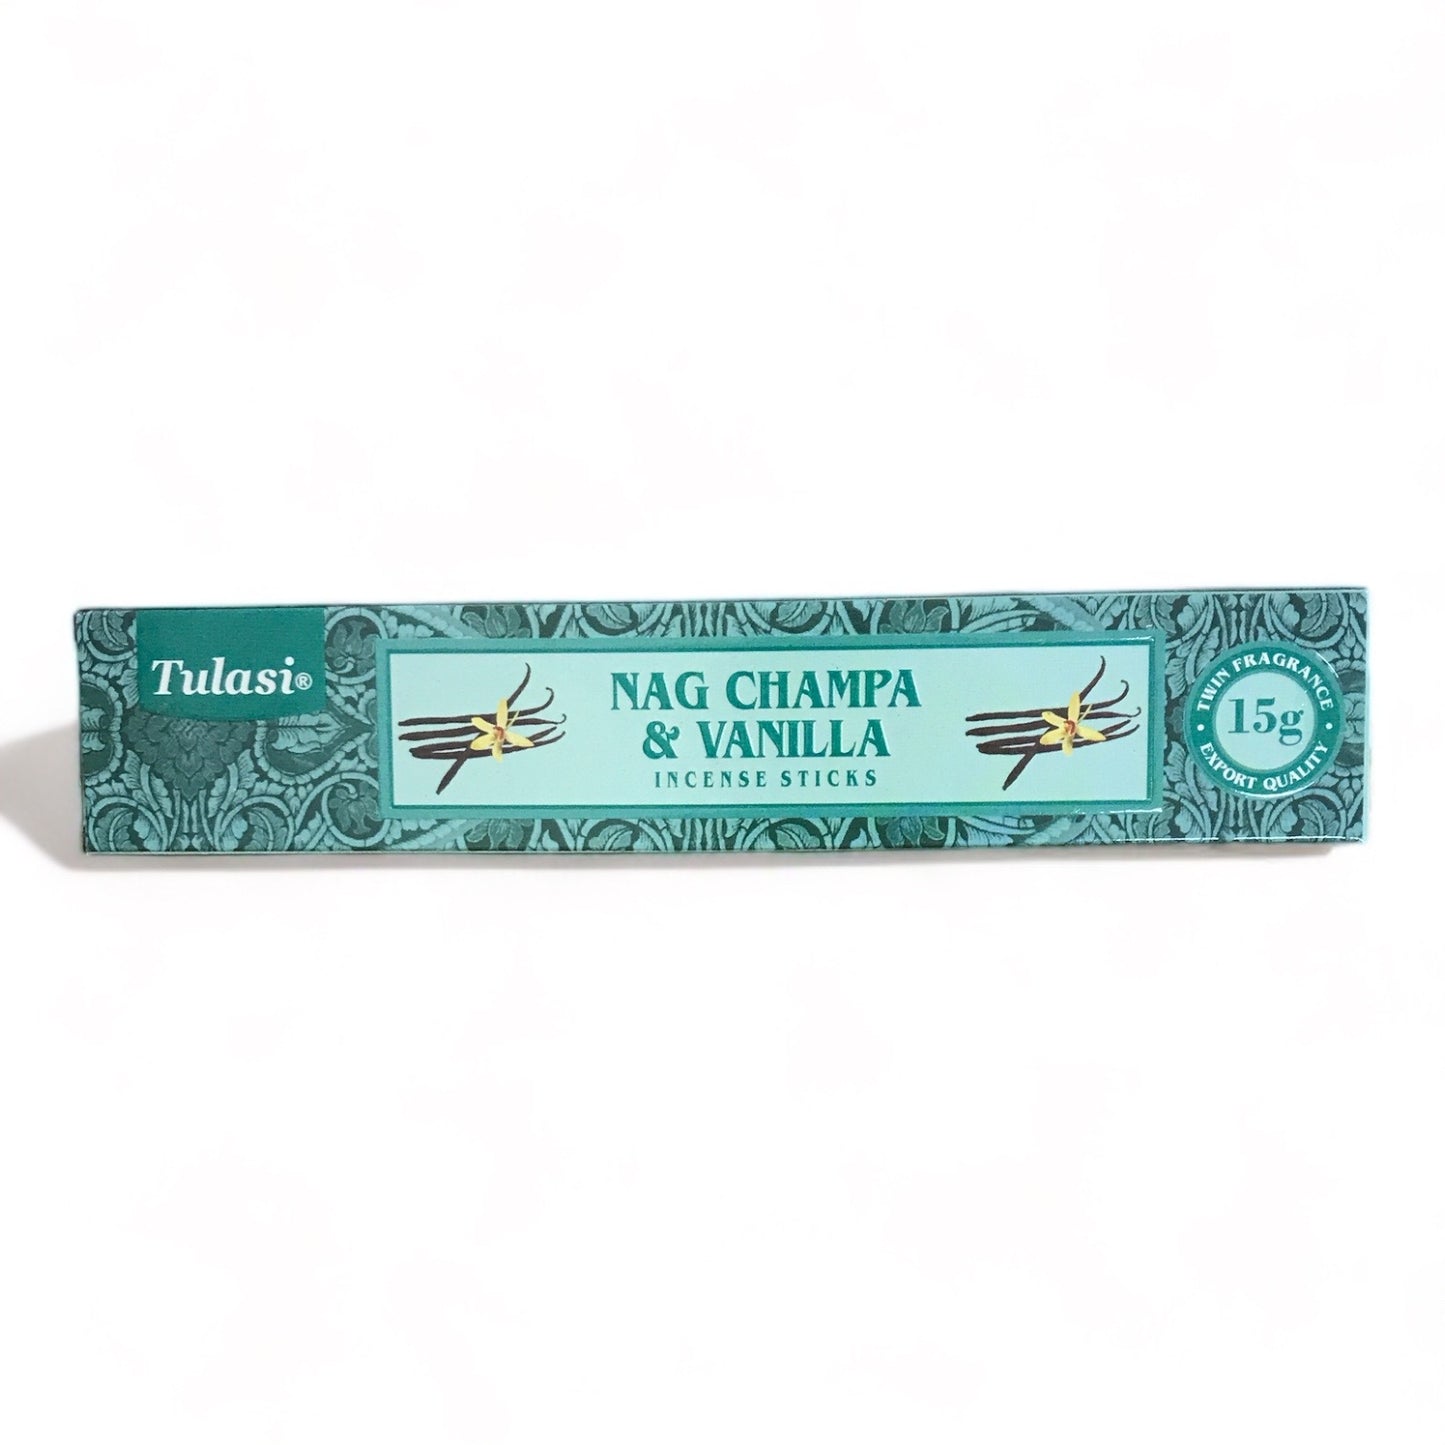 Nag Champa and Vanilla Incense Sticks - Tulasi